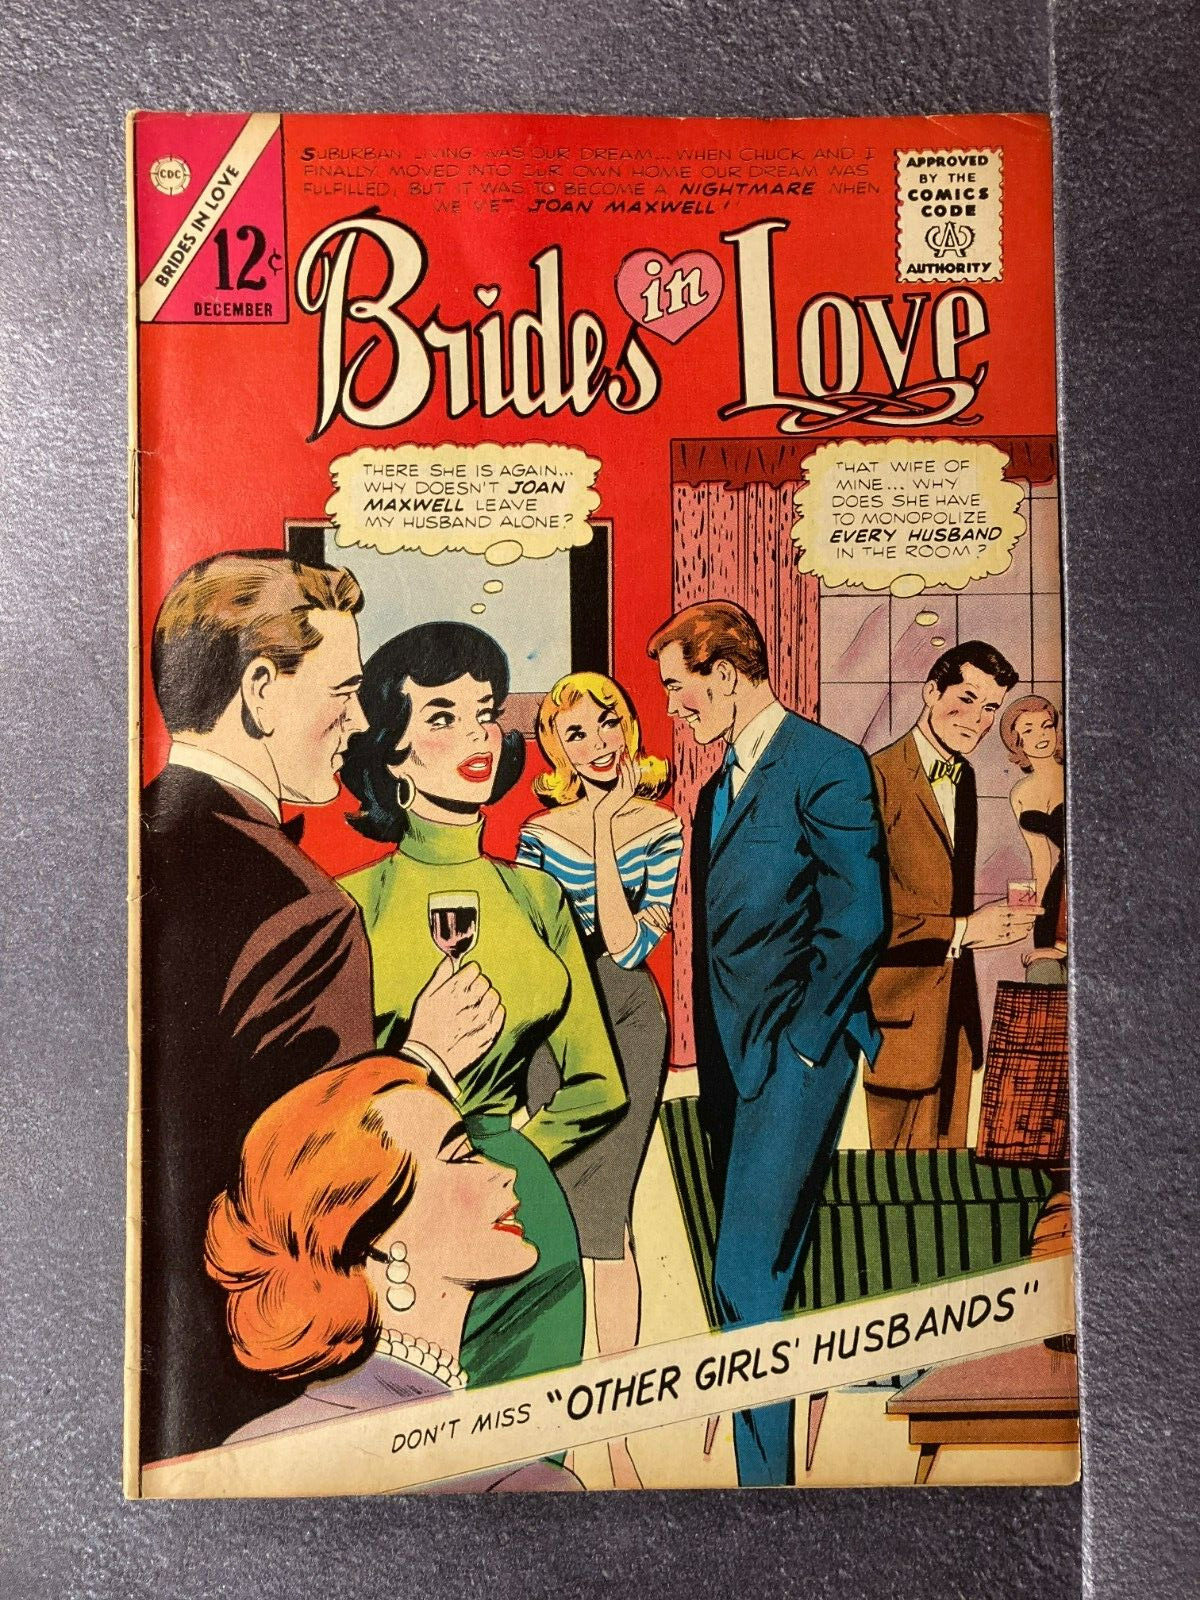 CDC - BRIDES IN LOVE, DEC 1964,VOLUME 1 #44, .12 cent, VG